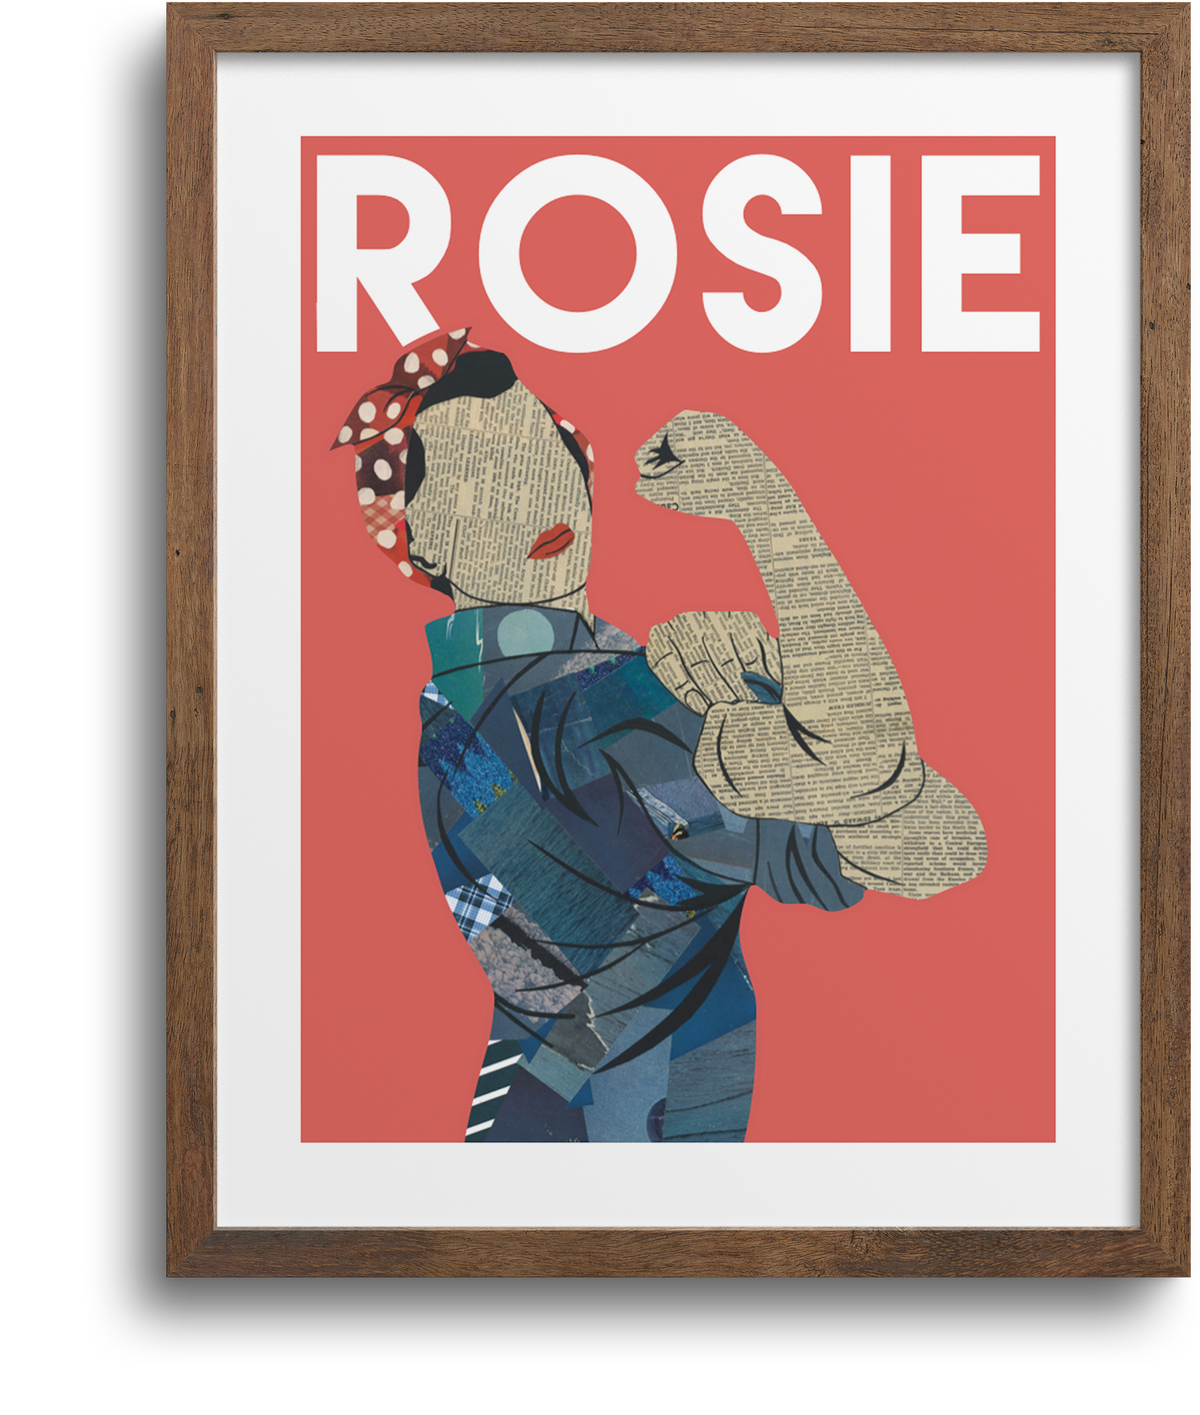 Wet Paint Printing Rosie The Riveter Cardboard Standup